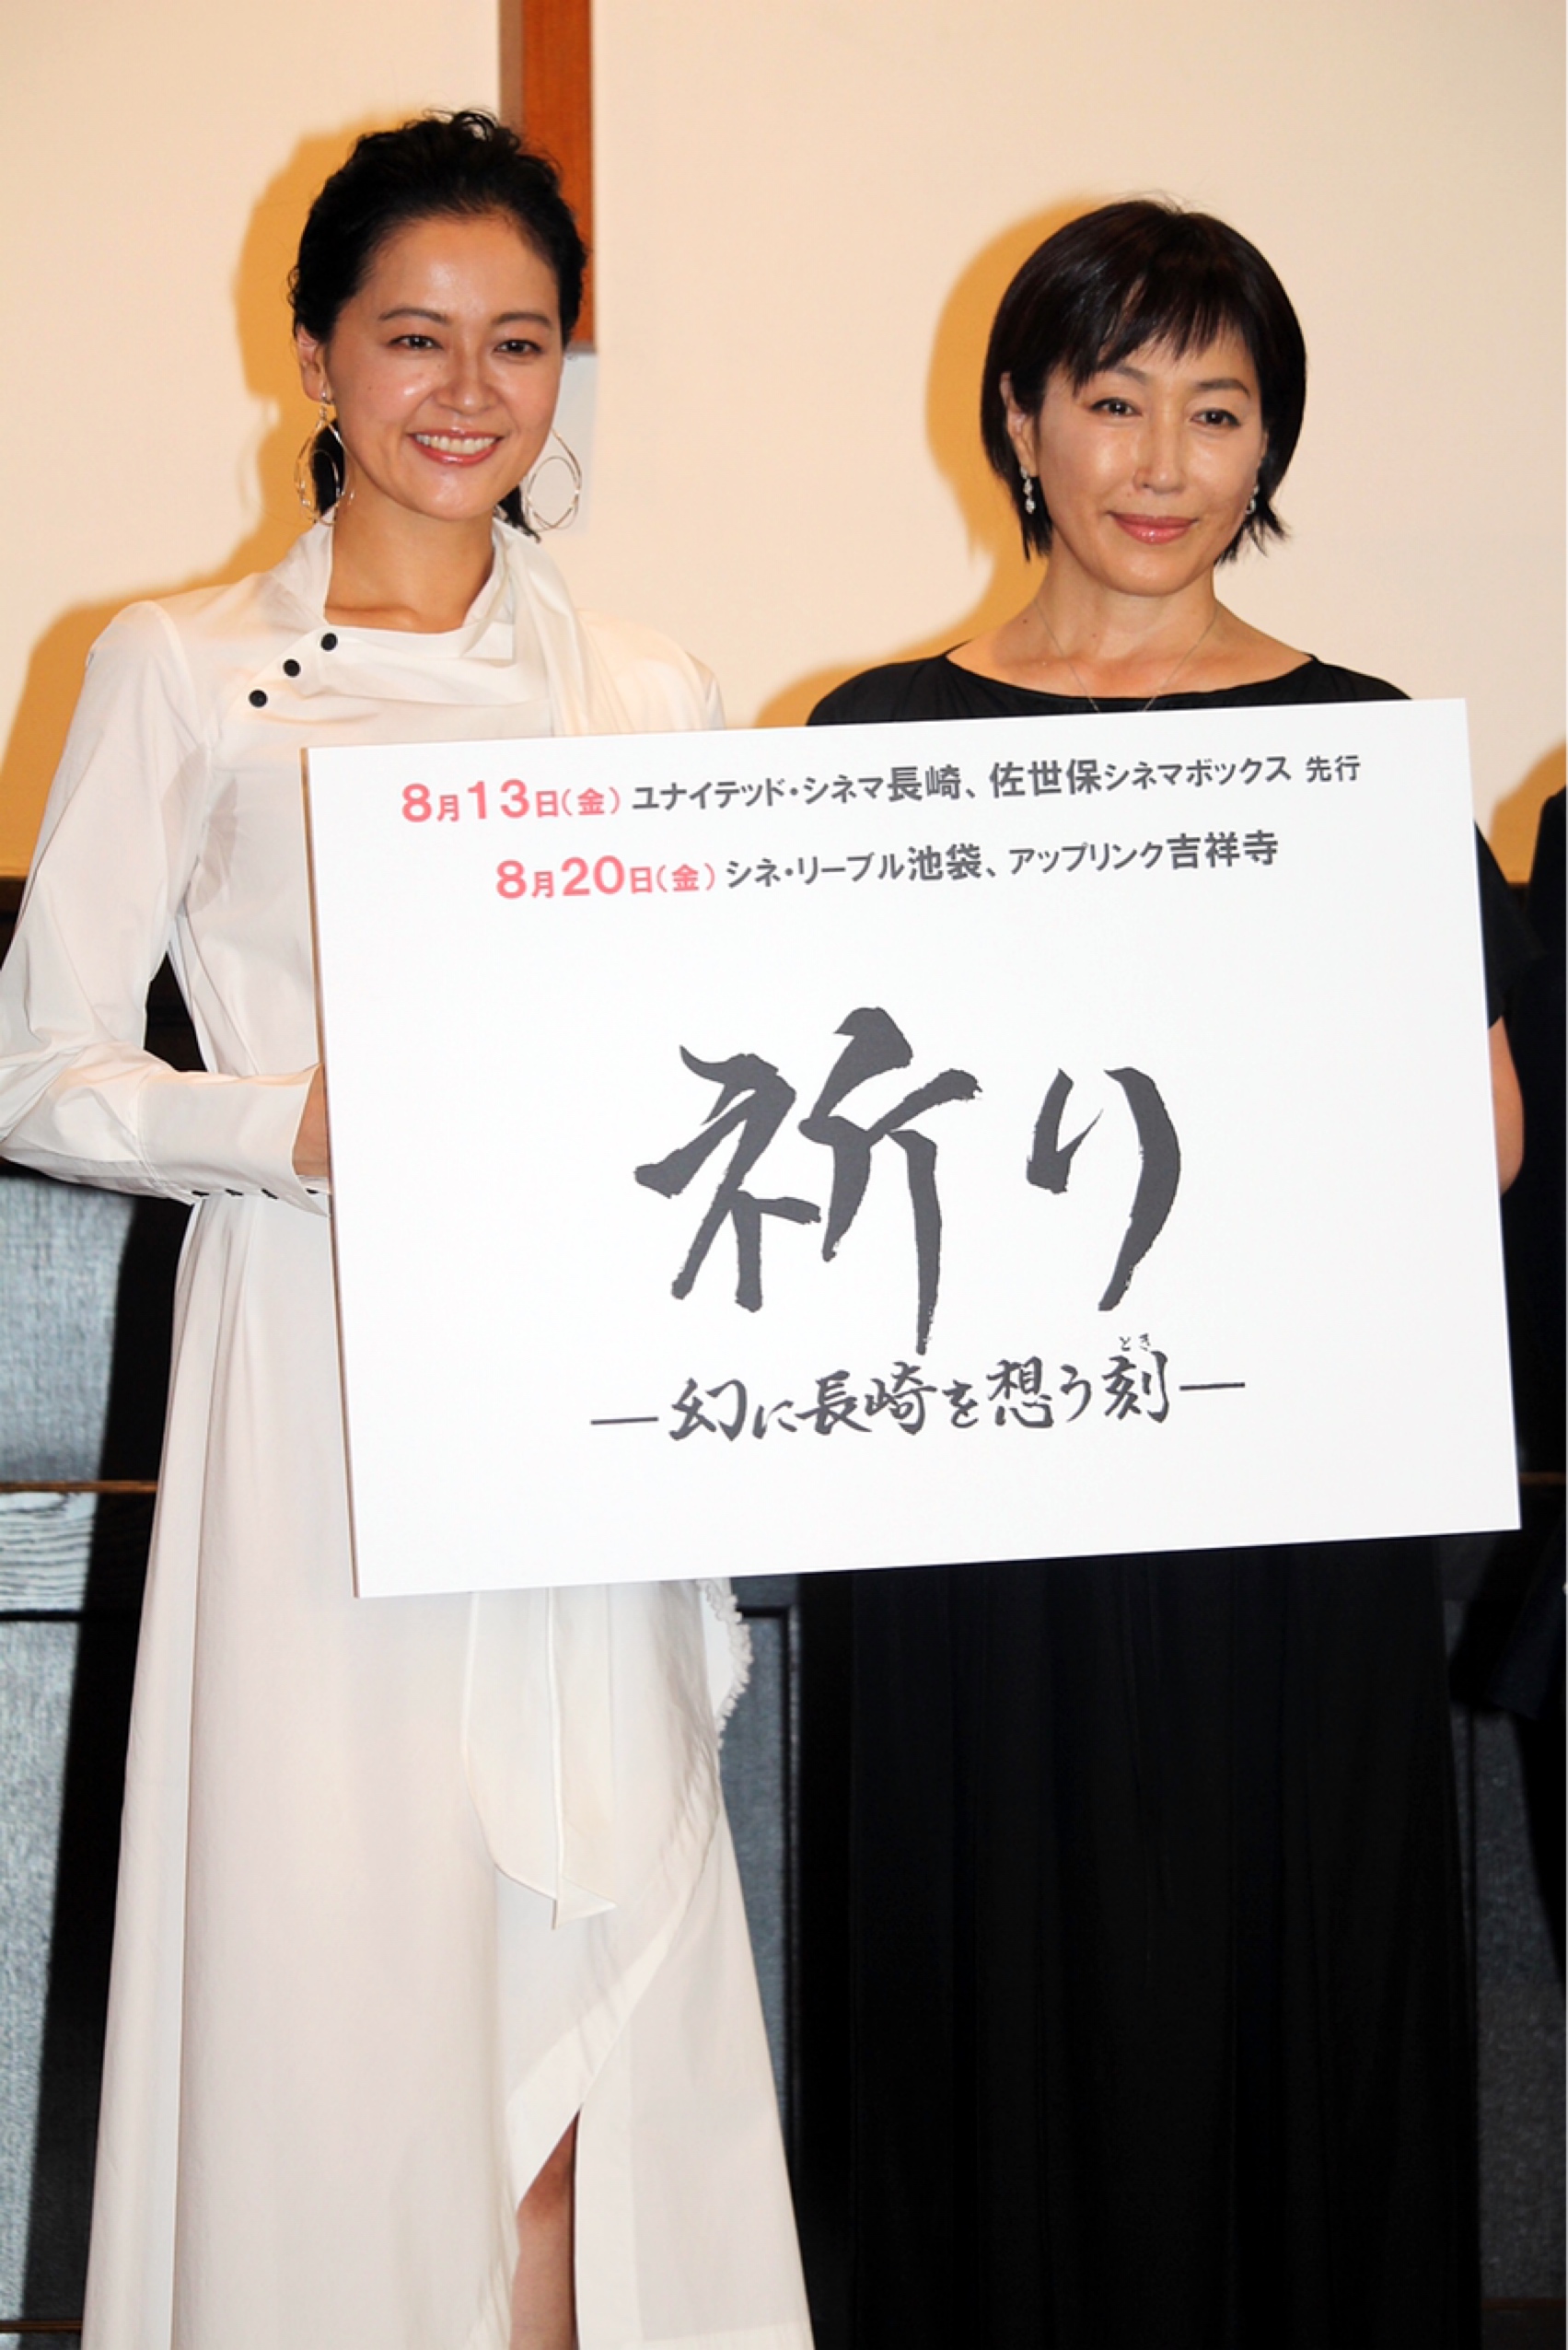 高島礼子、被爆後の長崎を描いた作品に出演 「教科書では知り得なかった現実に驚いた」 | Daily News | Billboard JAPAN